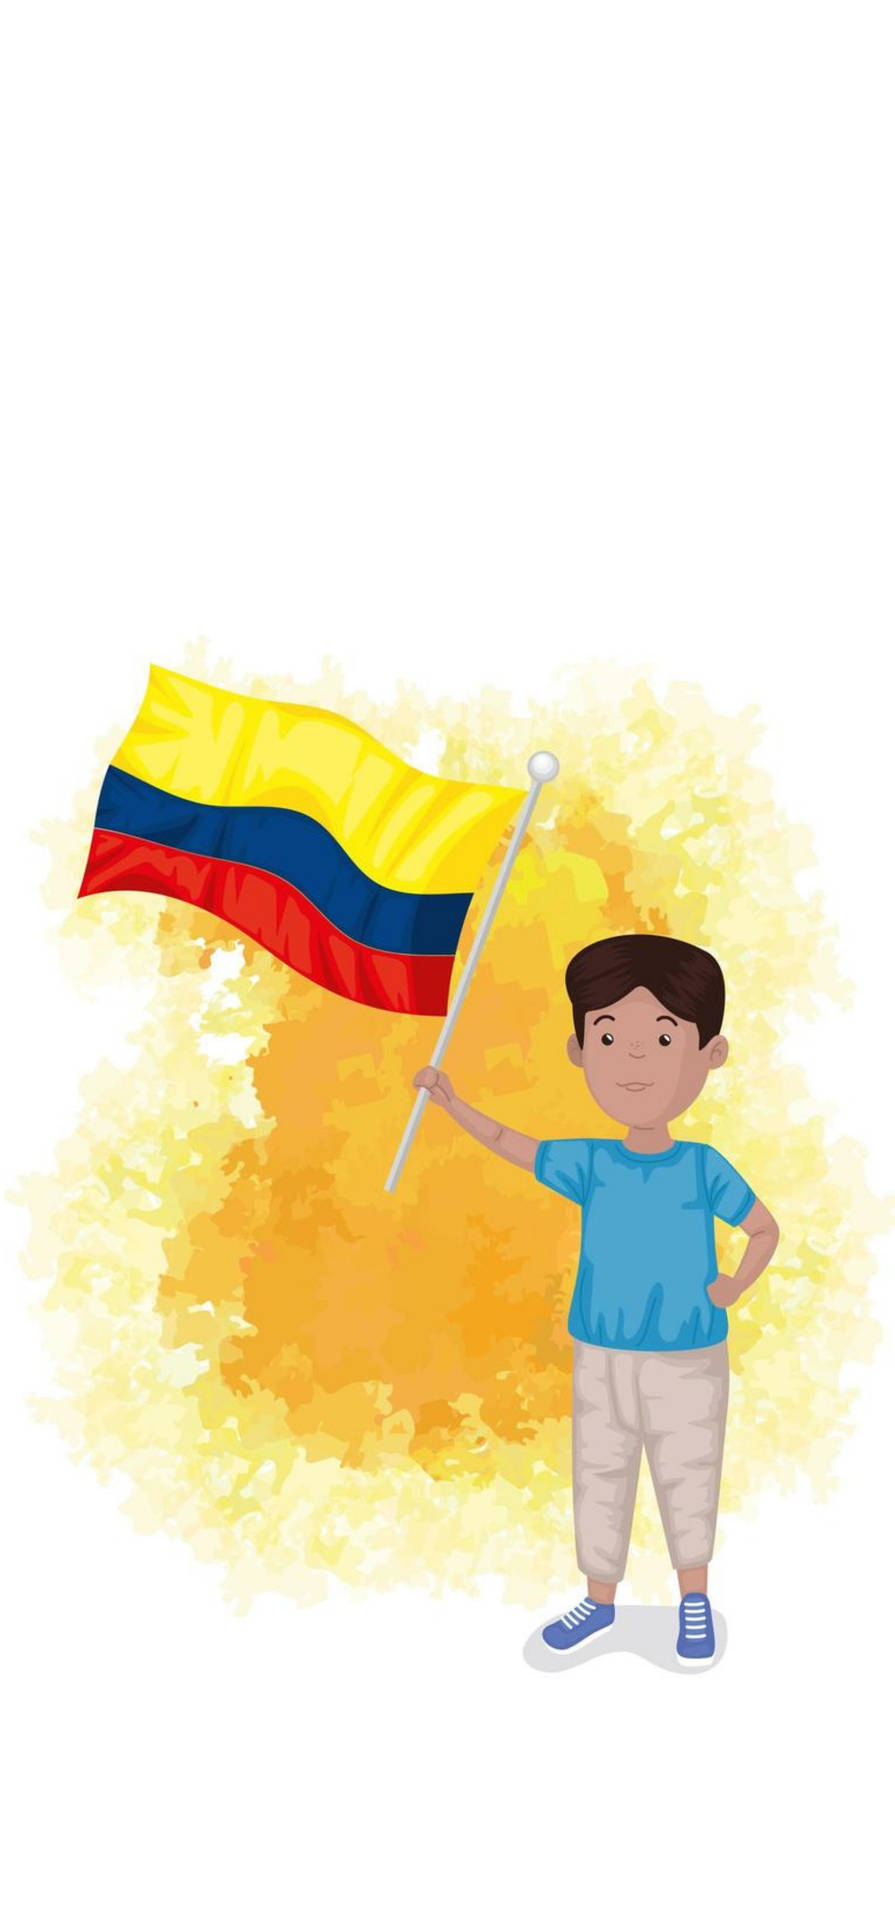 Gráficode La Bandera De Colombia Fondo de pantalla